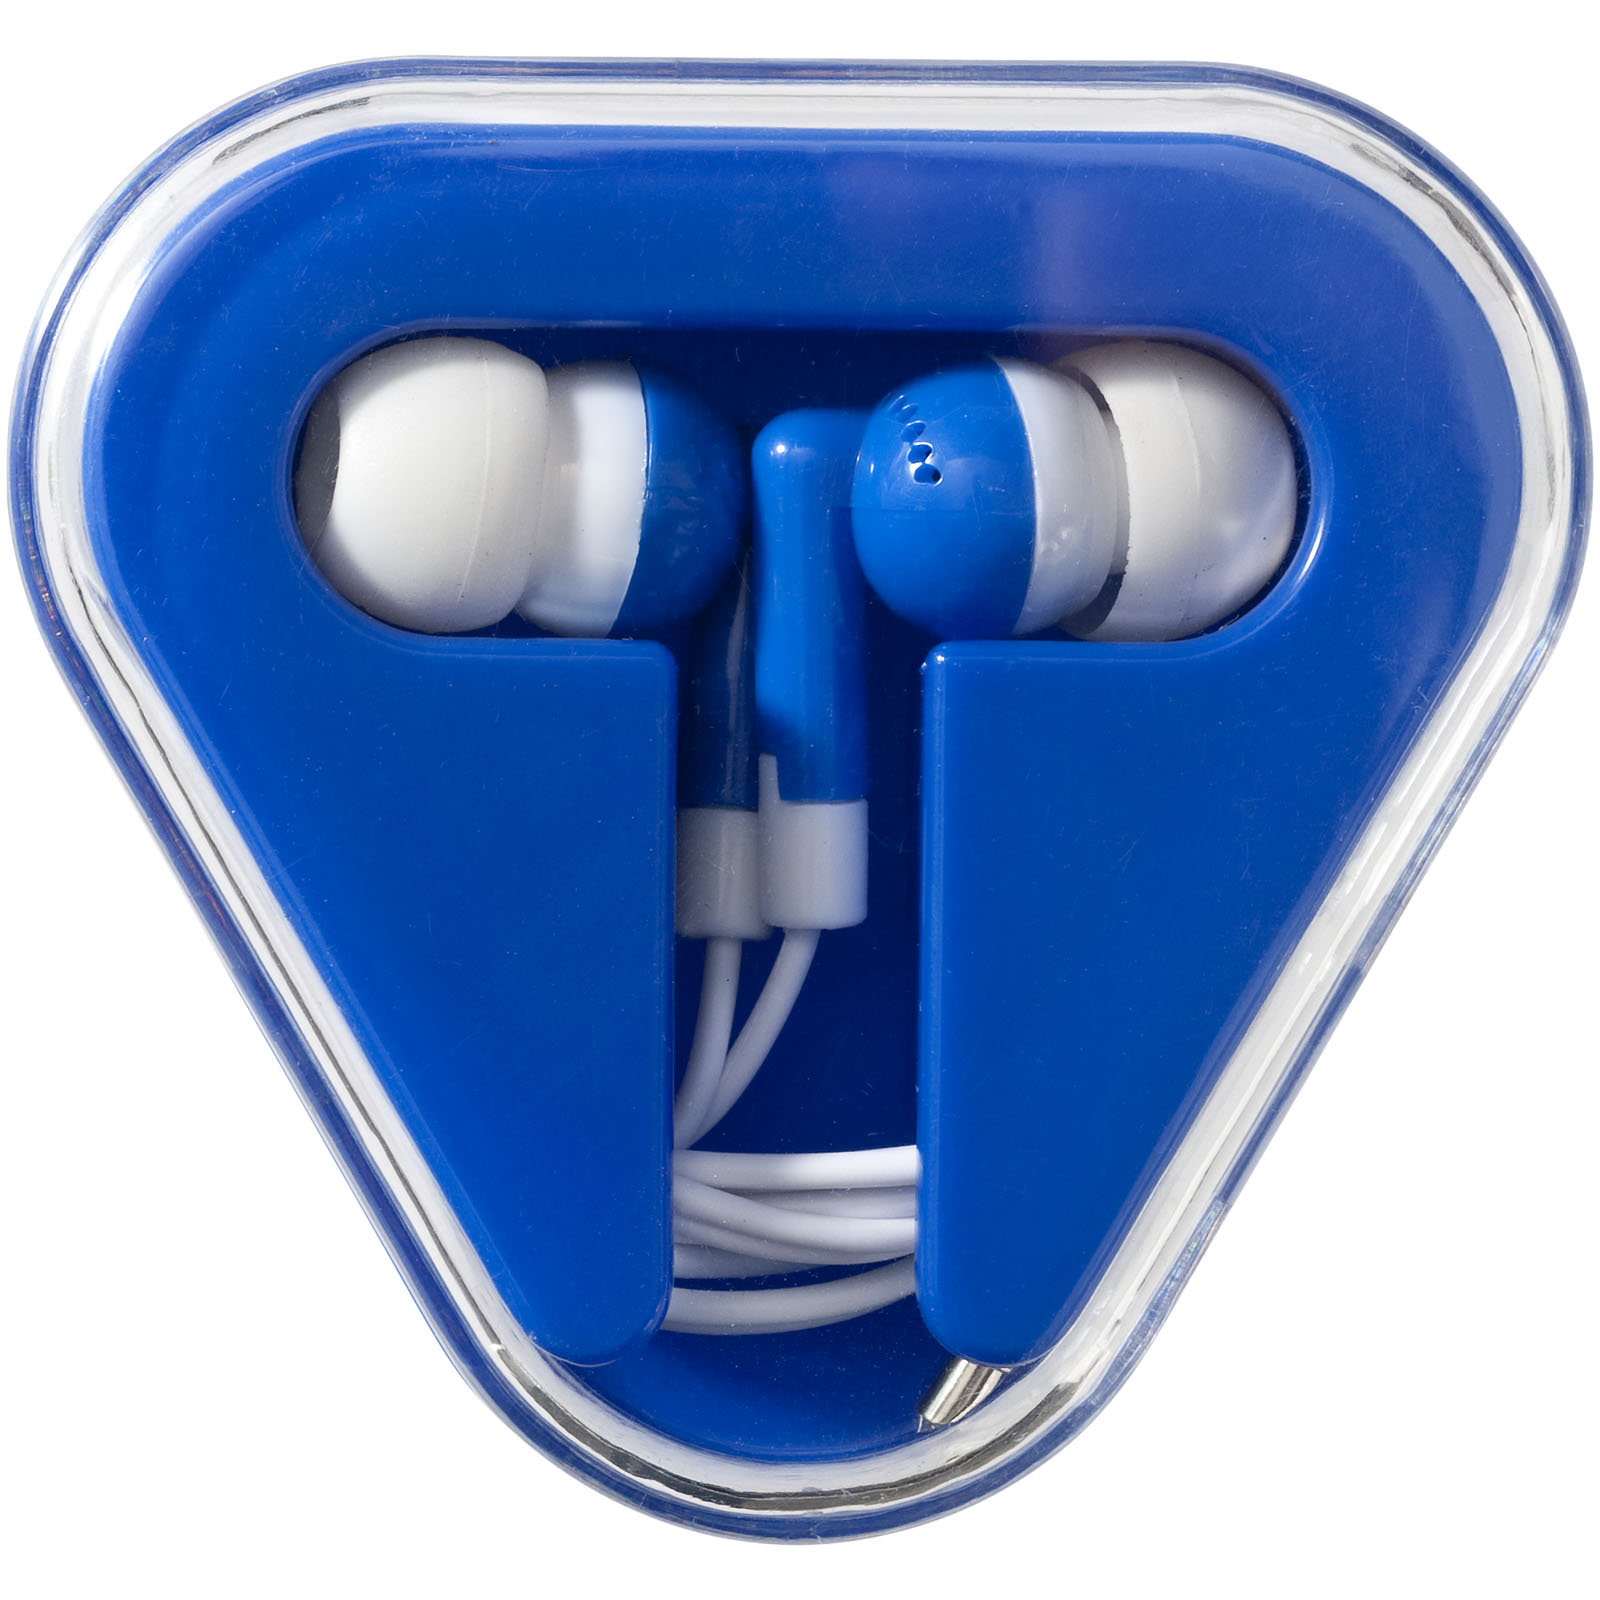 Advertising Earbuds - Rebel earbuds - 1